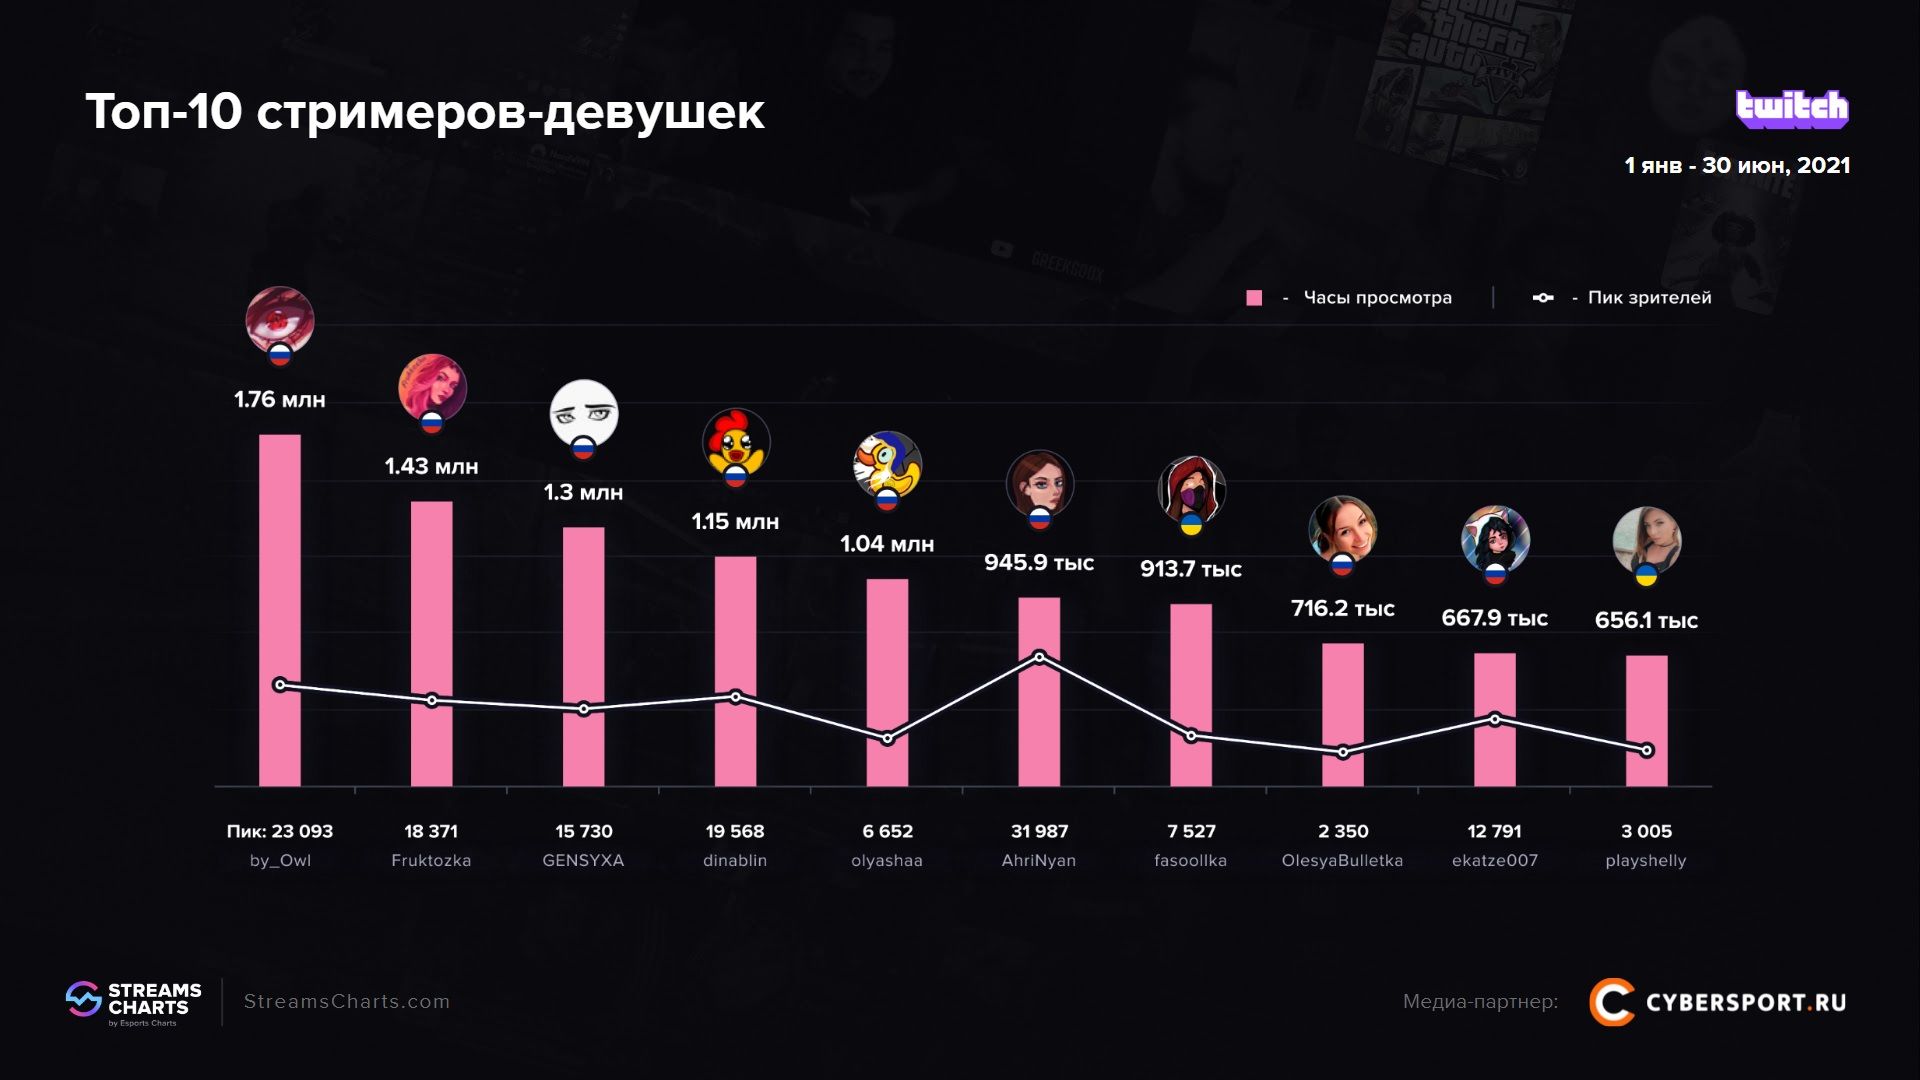 Самые популярные русскоязычные стримерши на Twitch в первой половине 2021 года